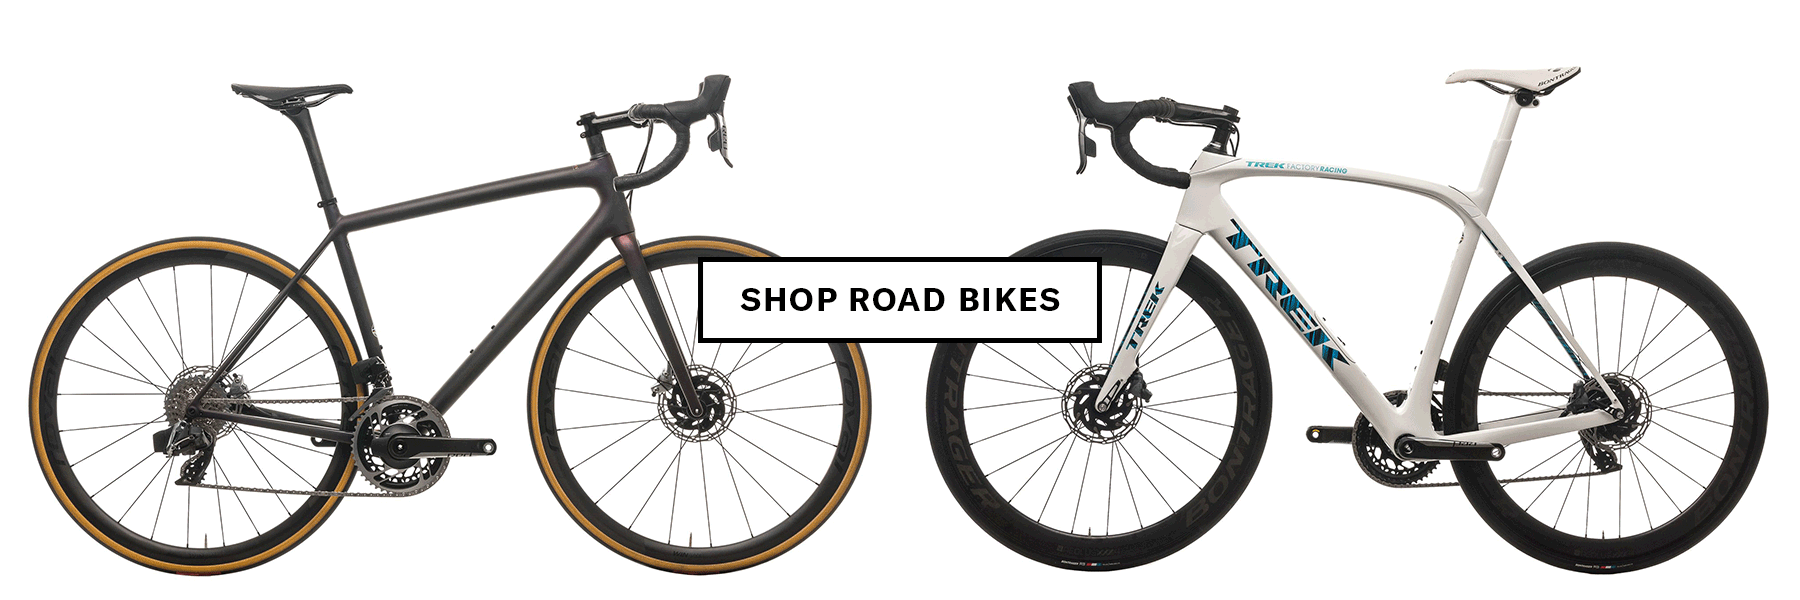 Shop road bikes